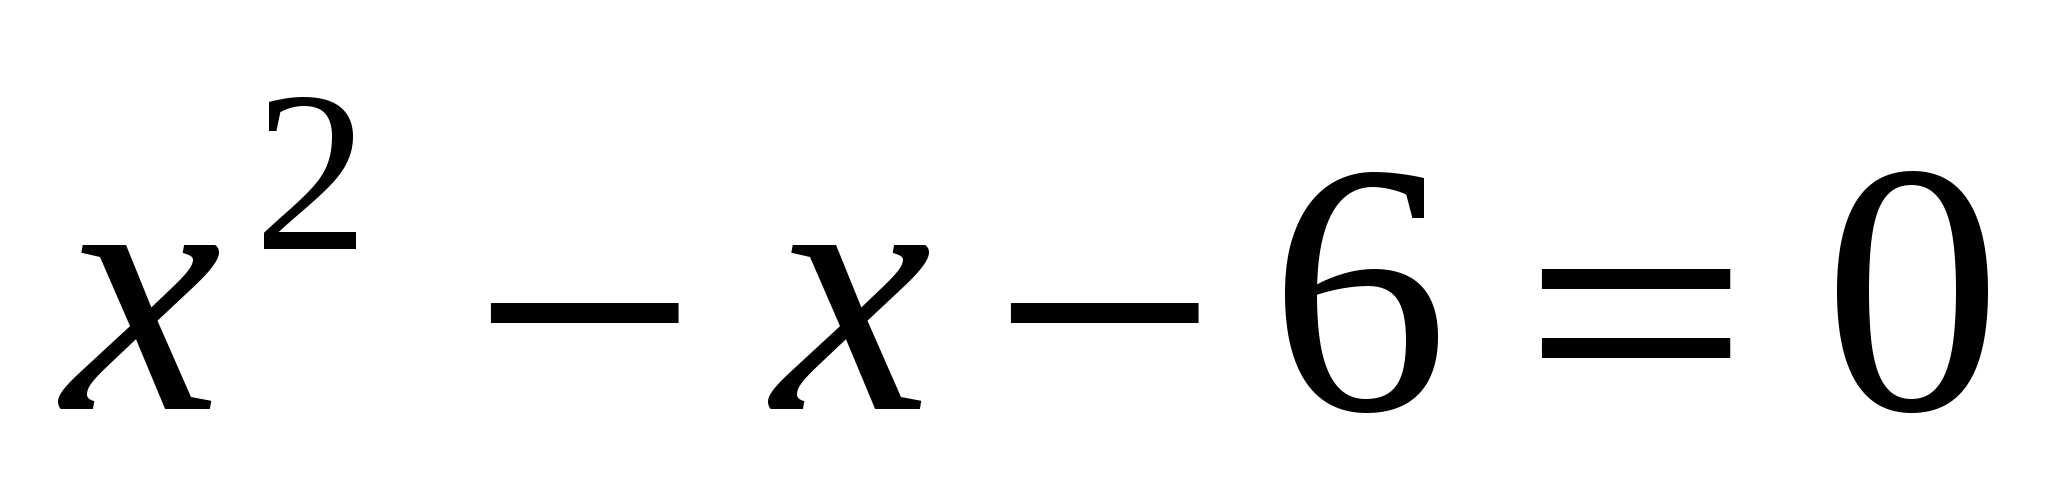 Решение квадратных уравнений по формуле